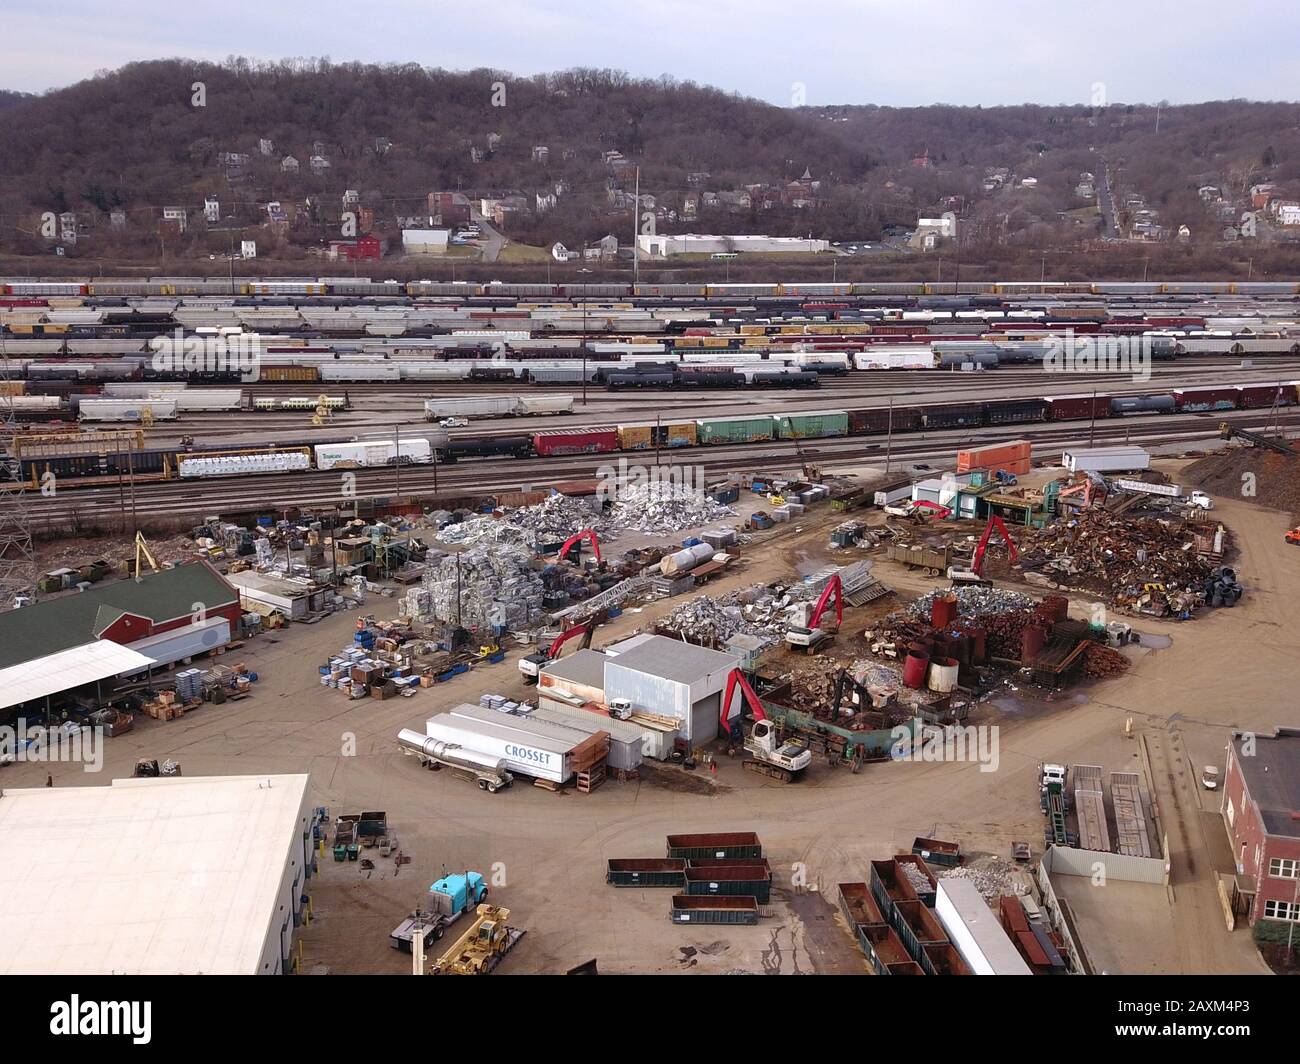 Drone aérienne Metal Scrayard recyclage Cincinnati Ohio États-Unis Banque D'Images